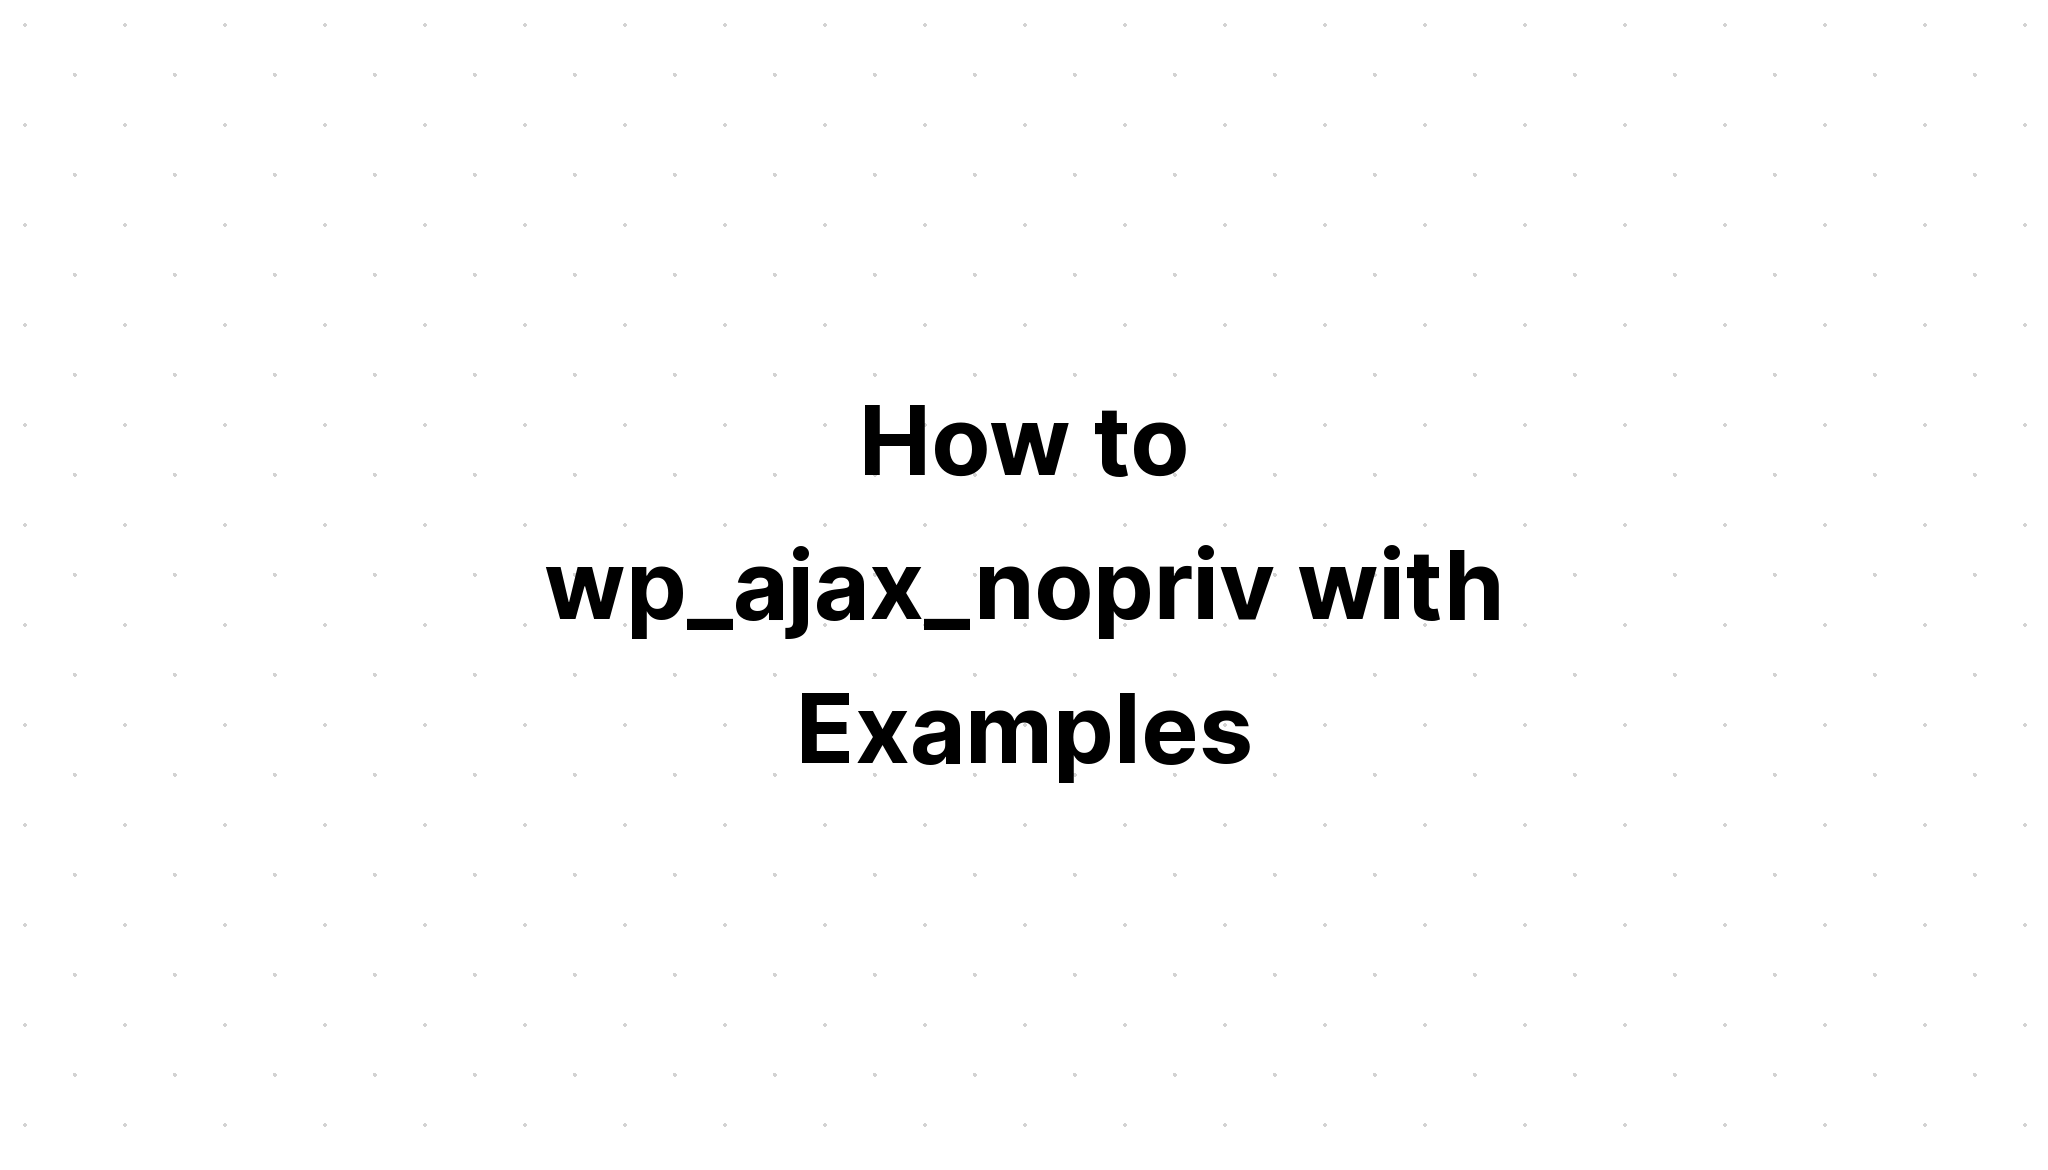 Cách sử dụng wp_ajax_nopriv với các ví dụ